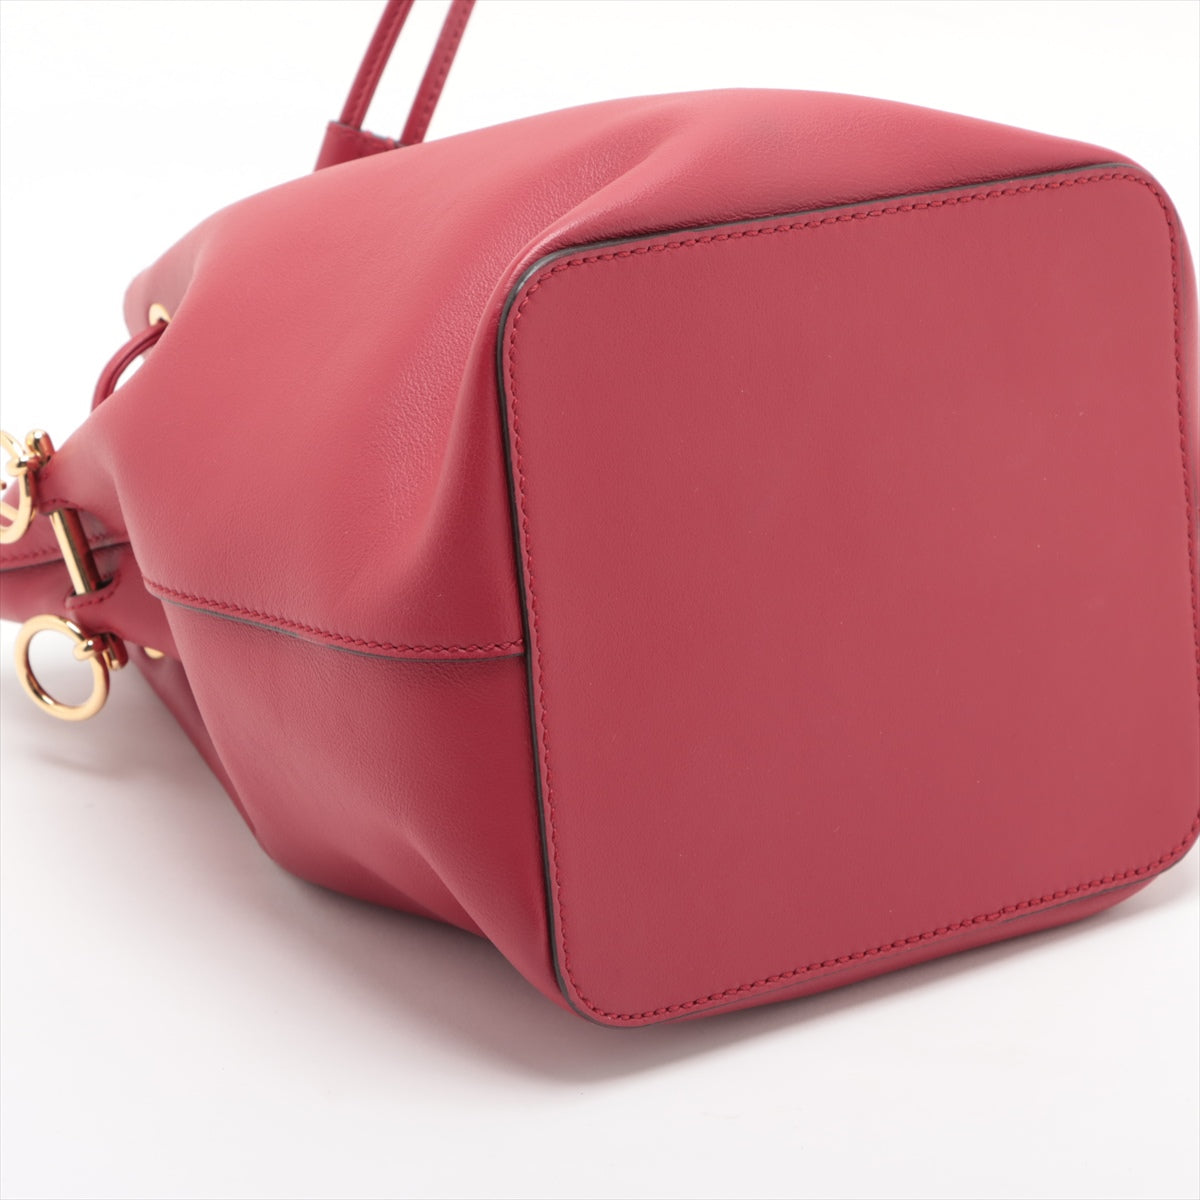 Fendi Montreux Leather Shoulder Bag Red 8BT298